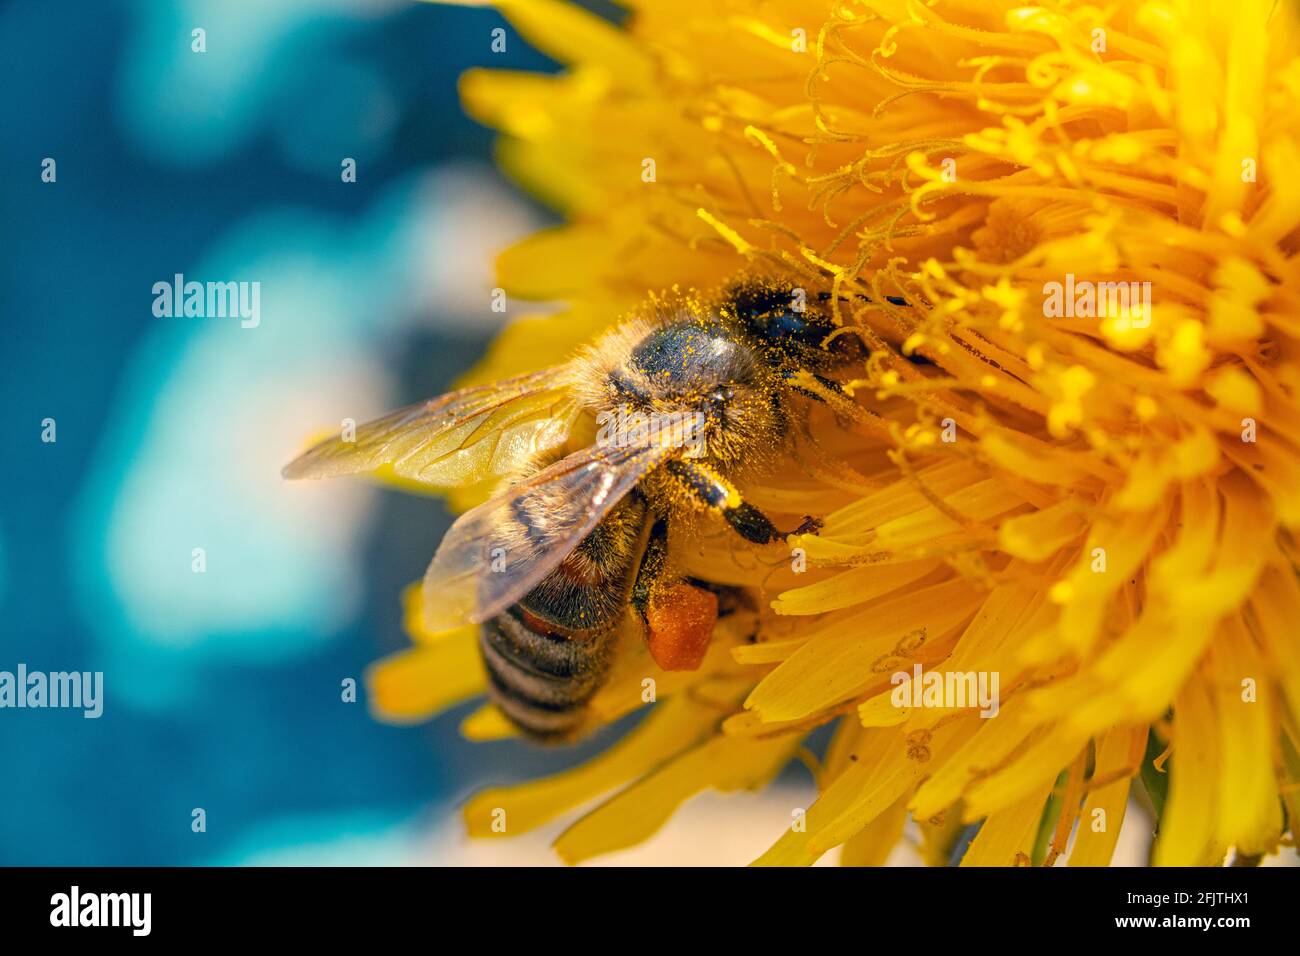 Una abeja de miel cubierta de polen con una cesta de polen en su pierna forrajeando en una flor de diente de león amarilla con fondo azul Foto de stock